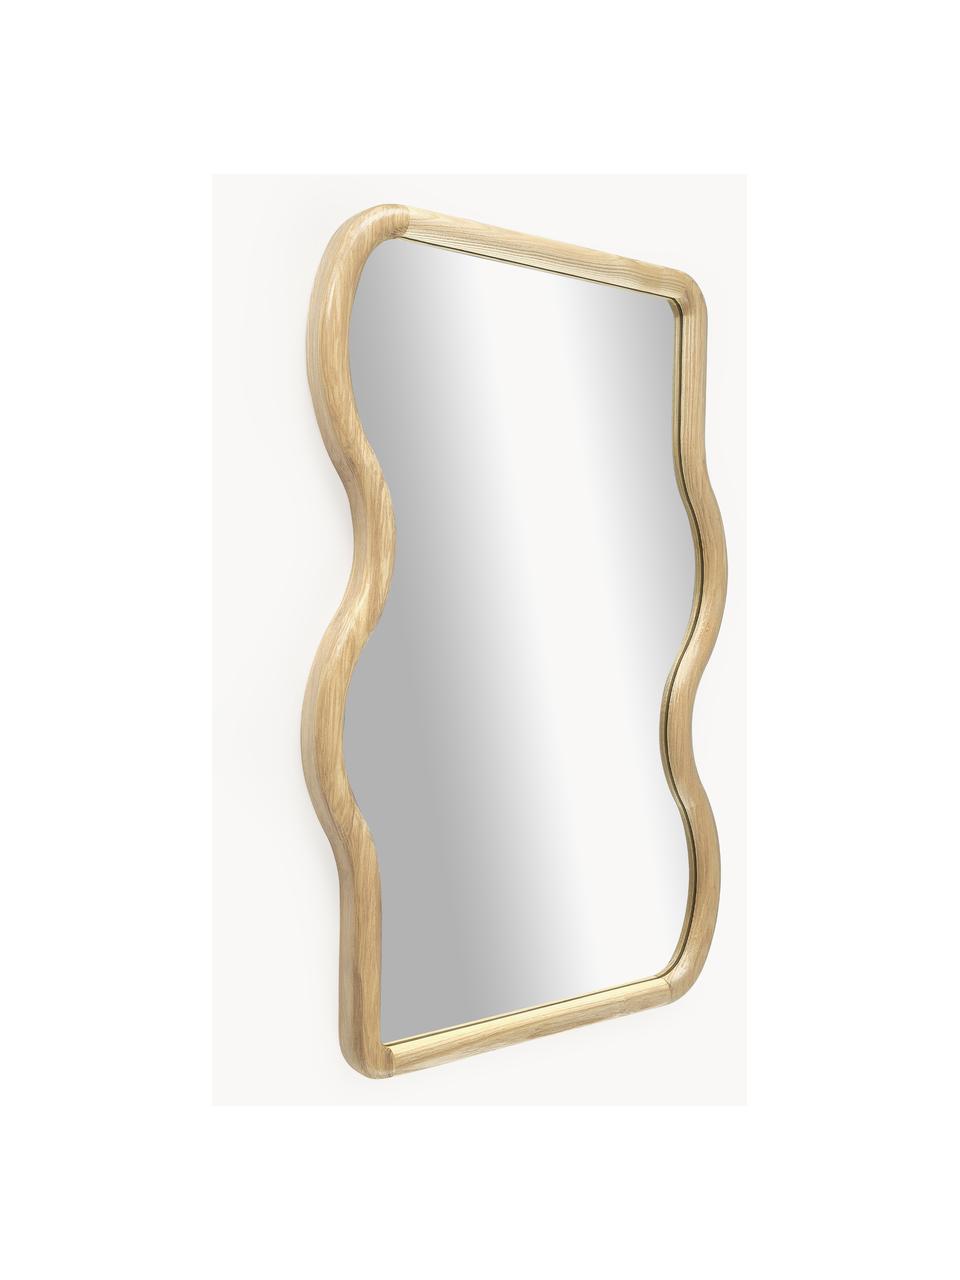 Wellenförmiger Wandspiegel Stream aus Holz, Rahmen: Eschenholz, Spiegelfläche: Spiegelglas, Rückseite: Mitteldichte Holzfaserpla, Eschenholz, B 50 x H 75 cm